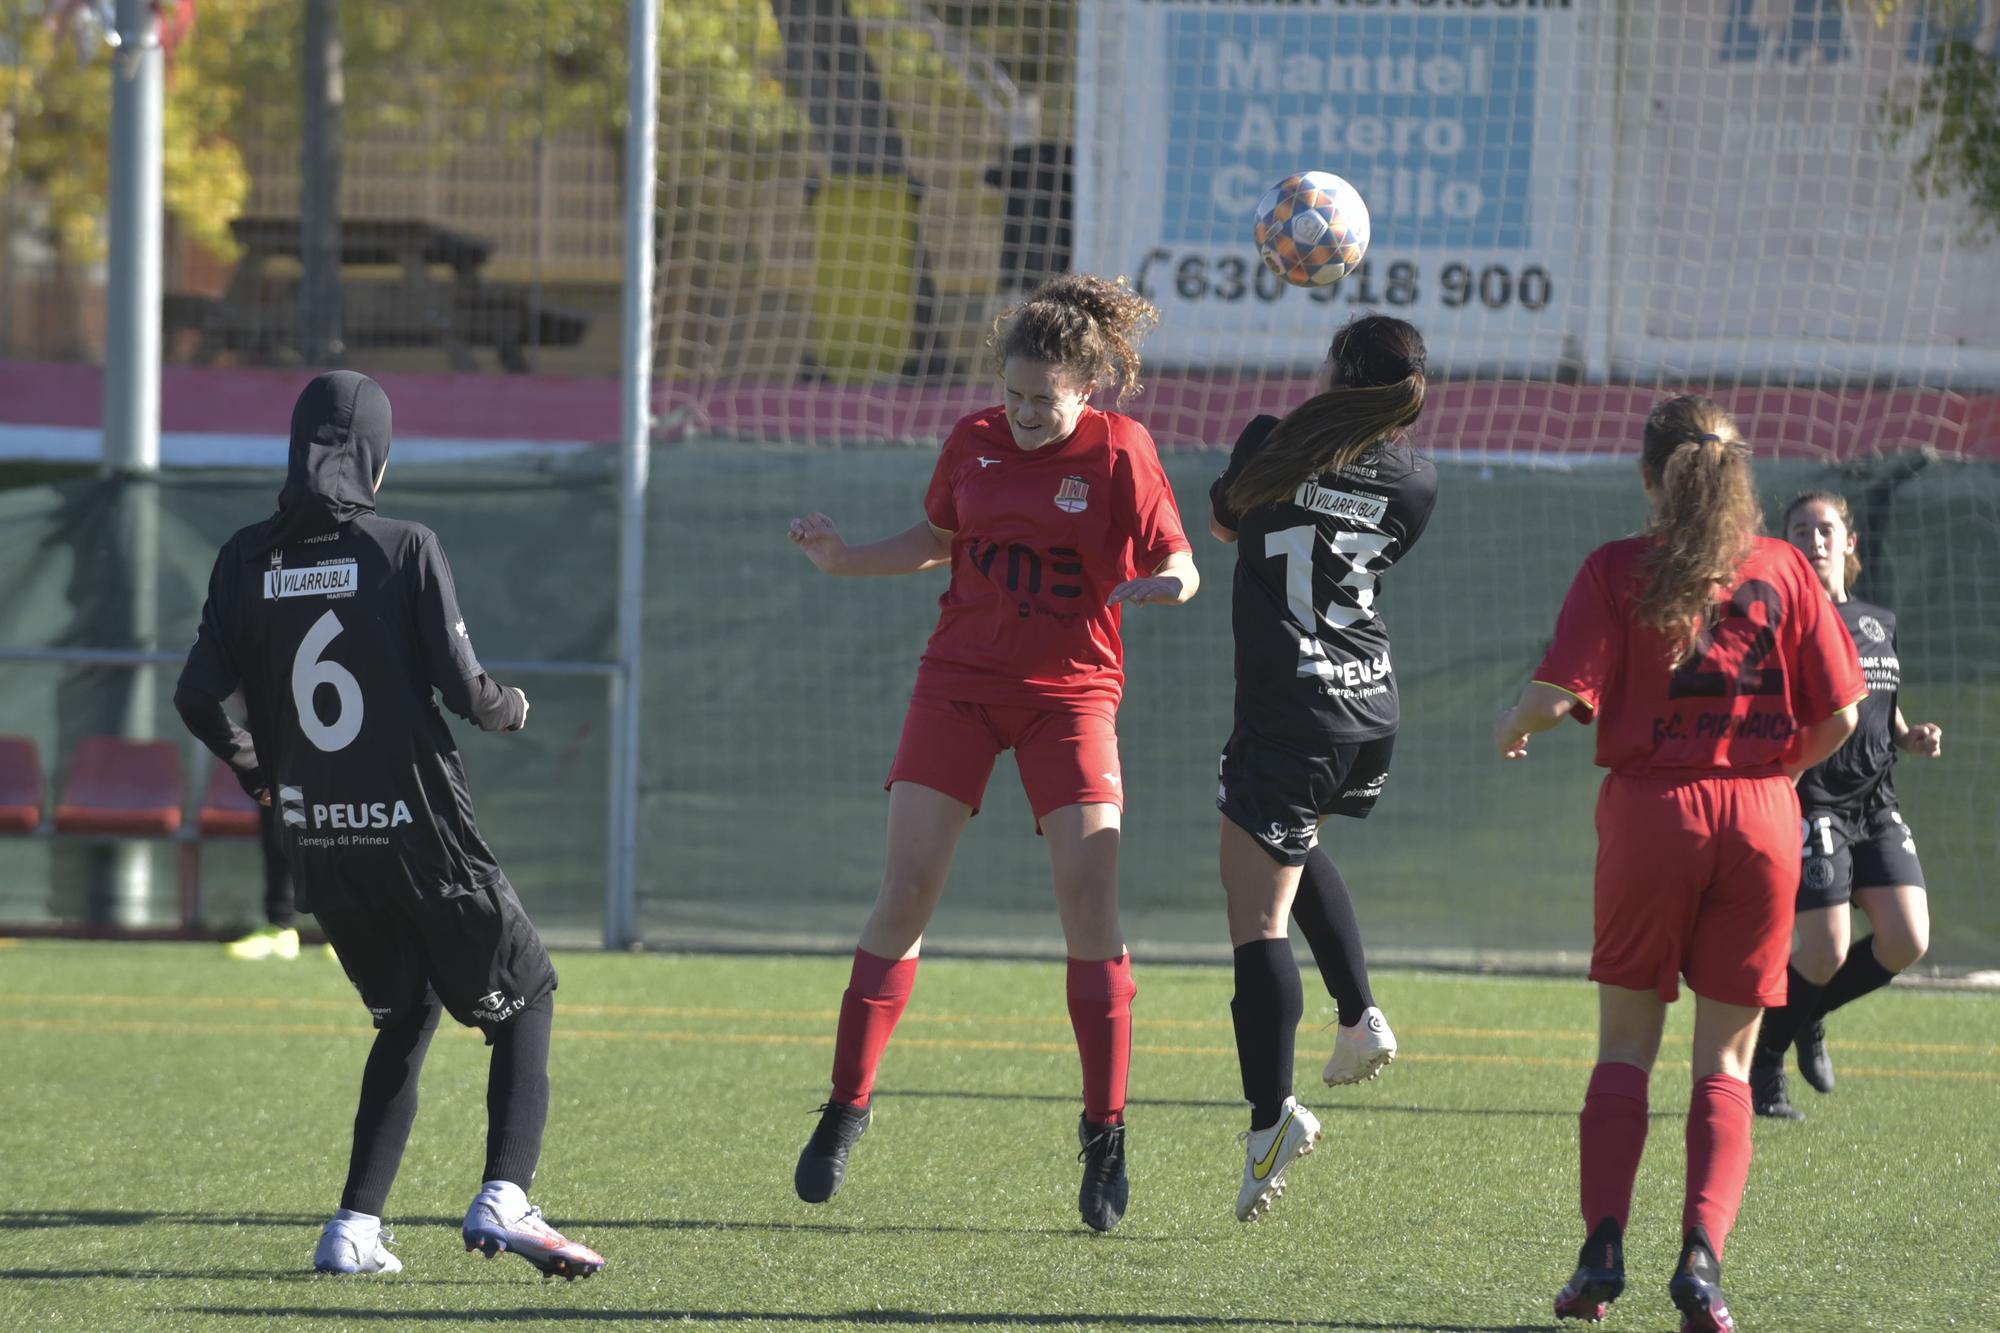 Les millors imatges del duel entre el FC Pirinaica i el FC Pirineus de la Seu d'Urgell